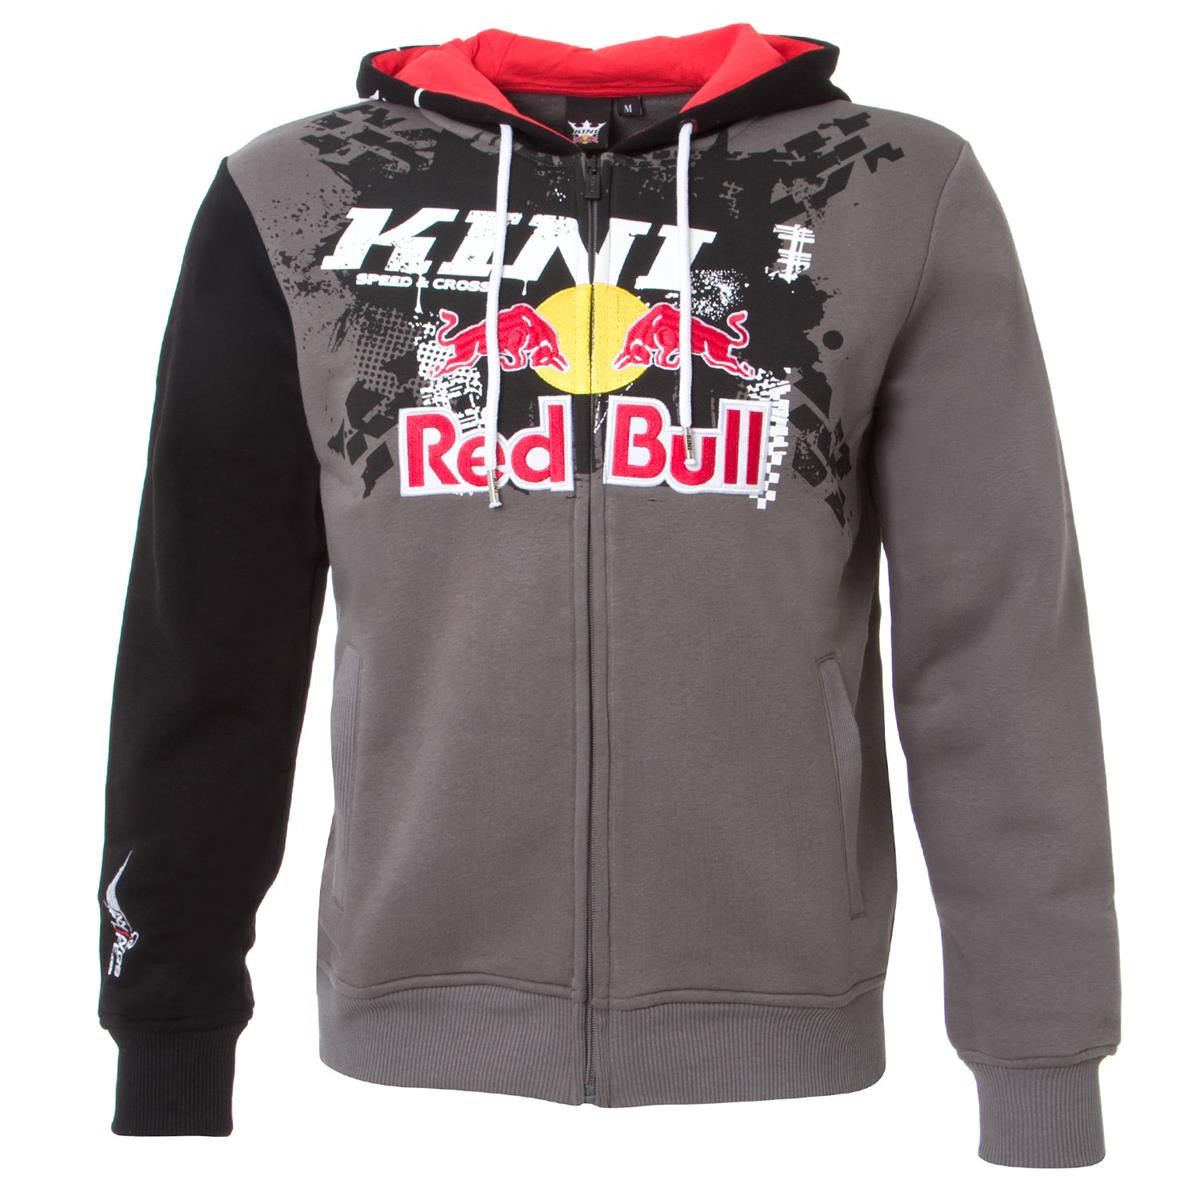 Kini Red Bull Zip-Hoody Crossed Schwarz/Dunkelgrau